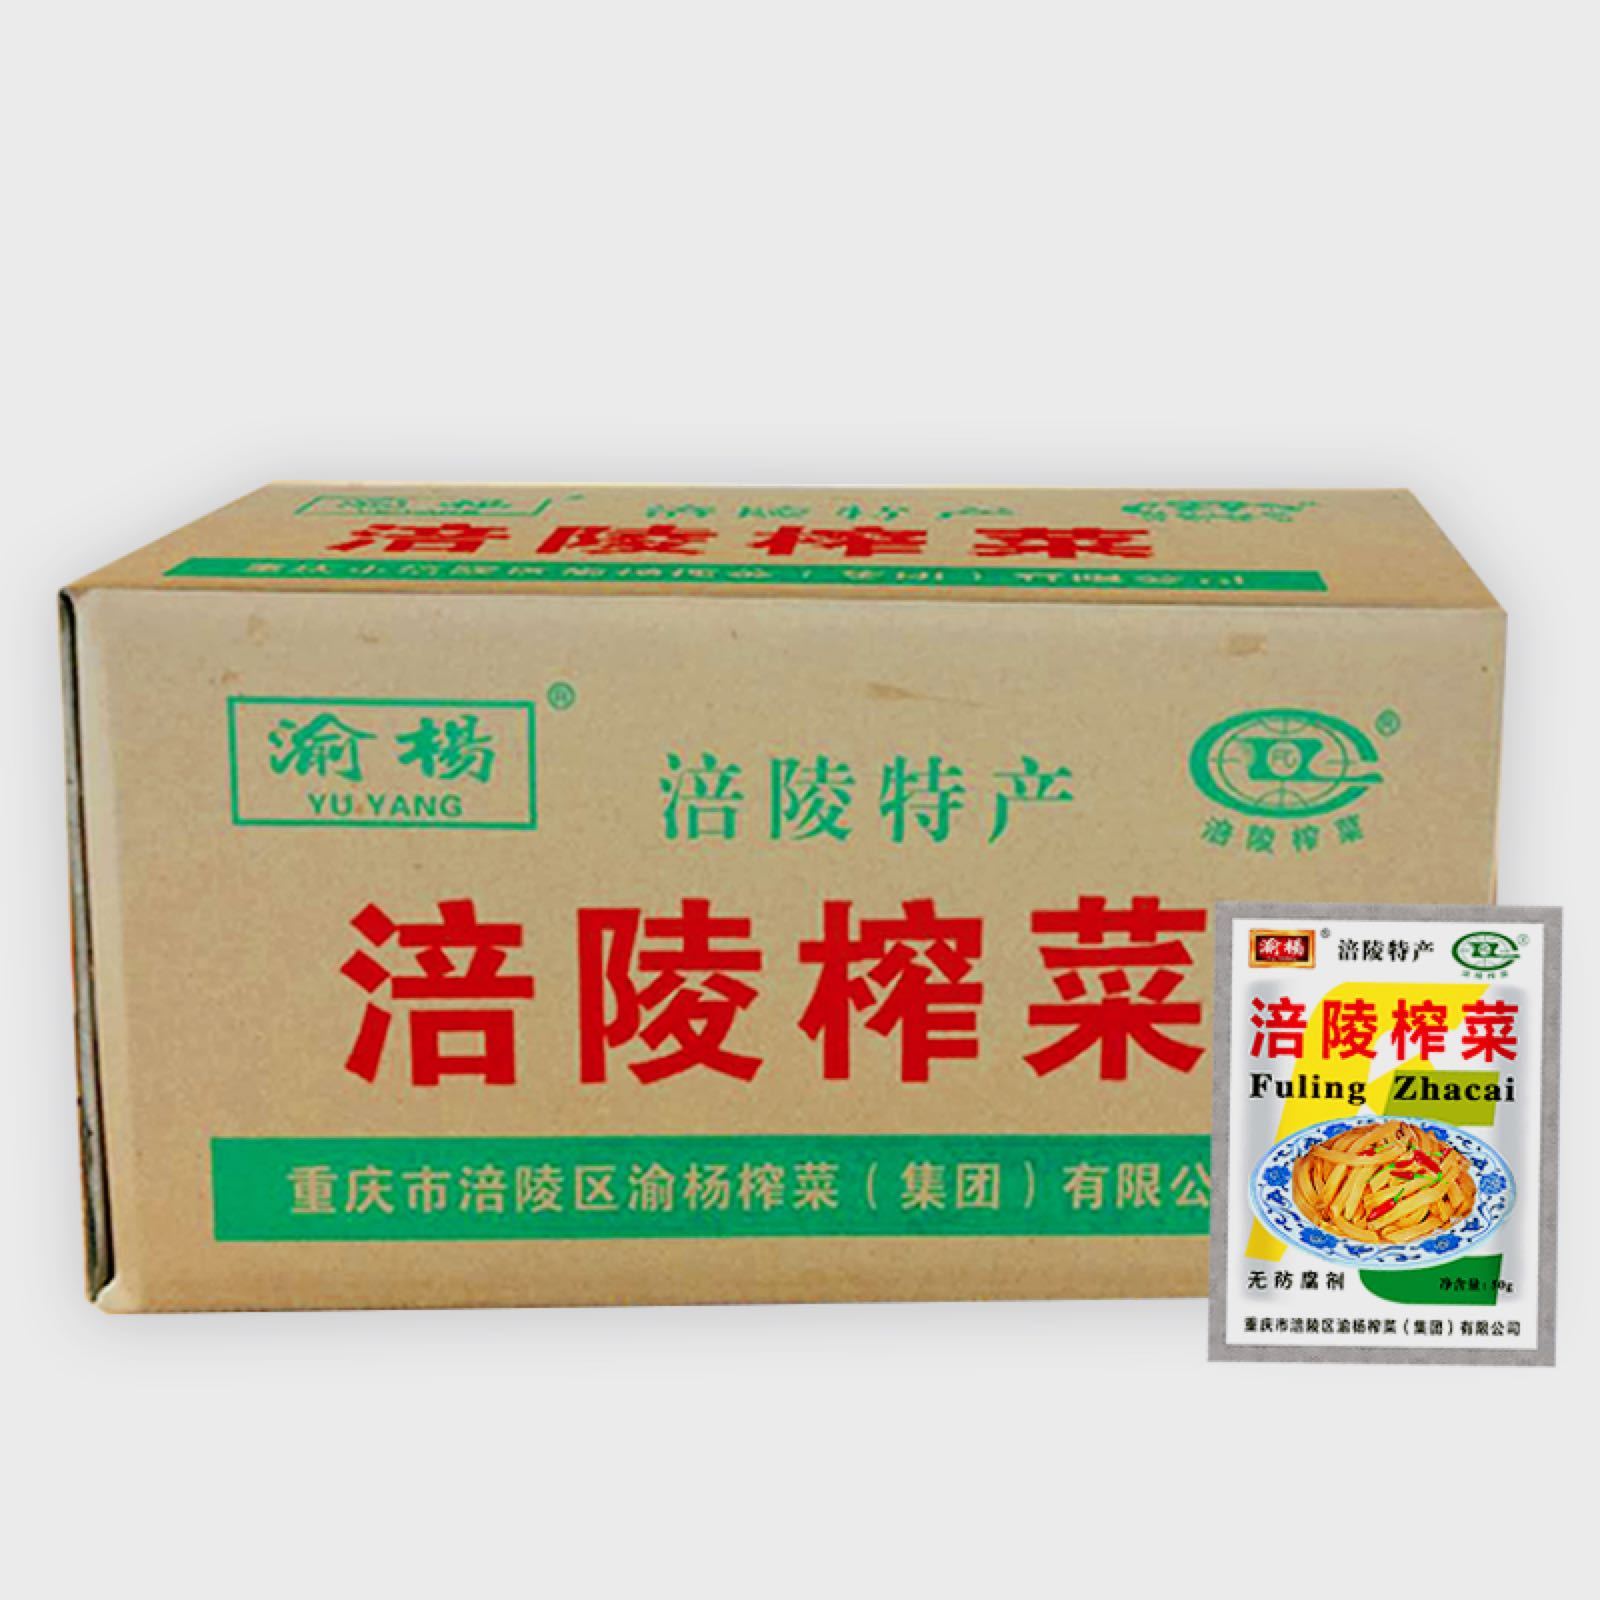 雅培菁智有机奶粉假包装图片对比_海蓝之谜新老包装对比_包装行业对比